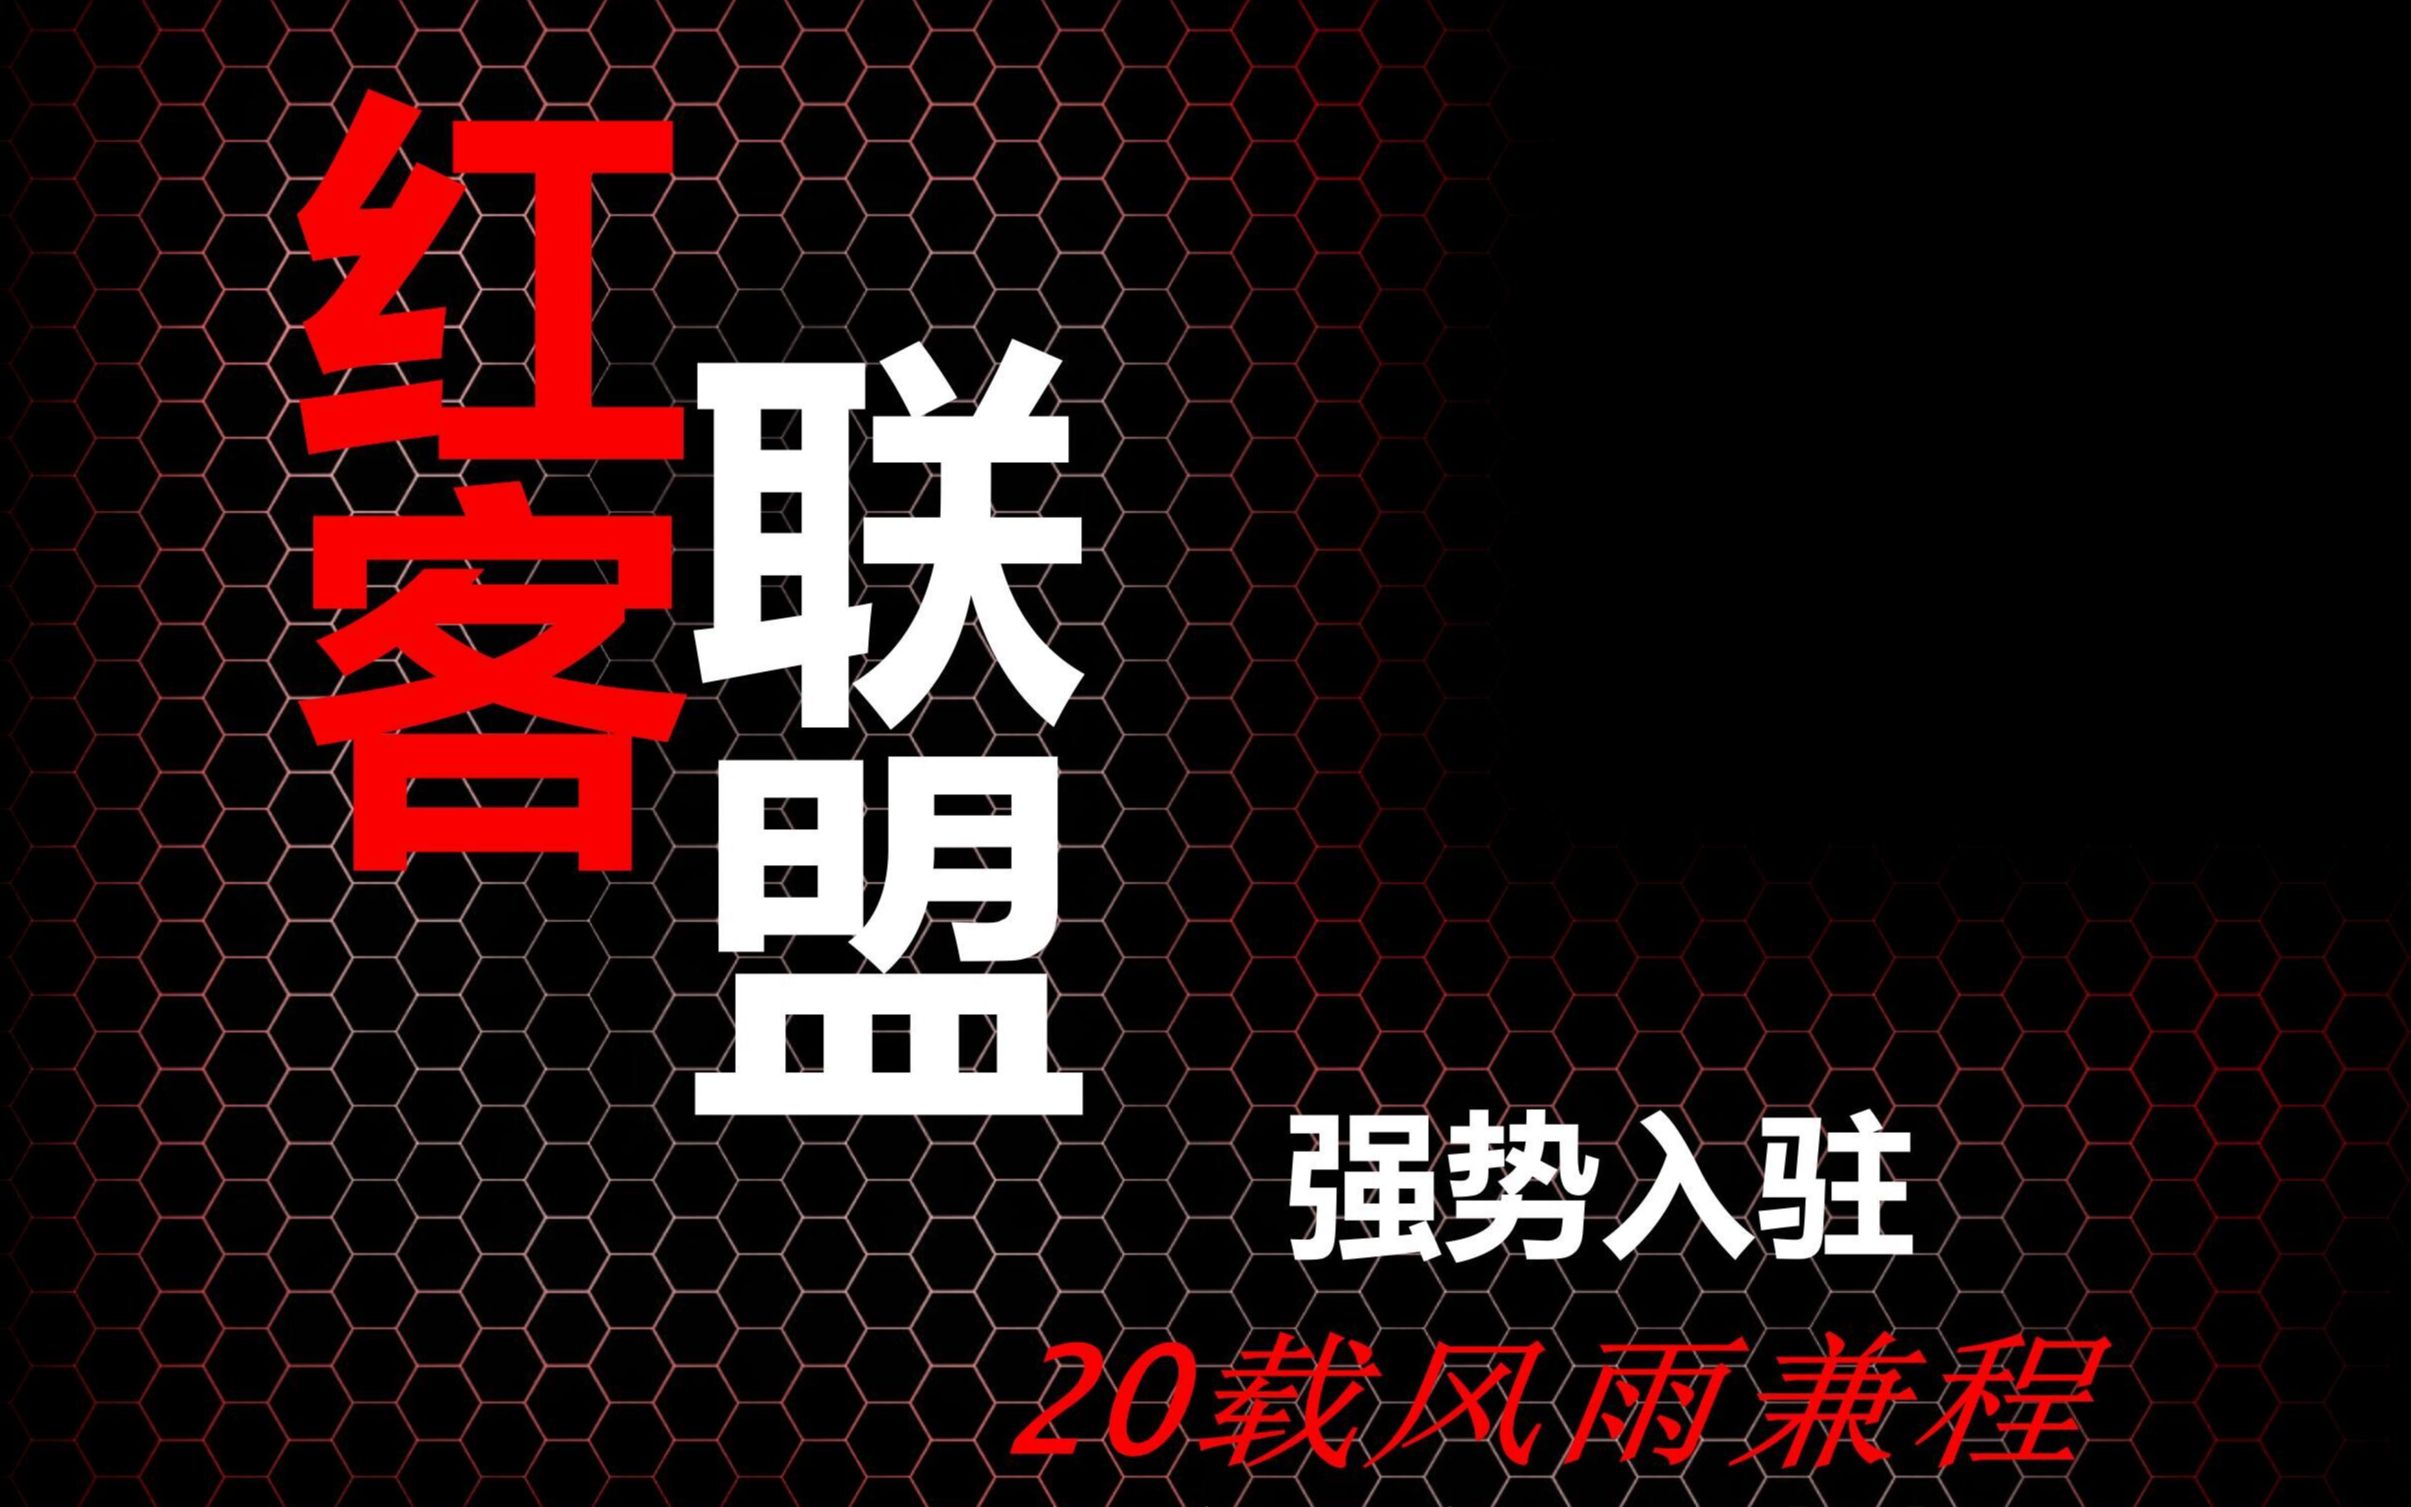 中国红客联盟标志图片